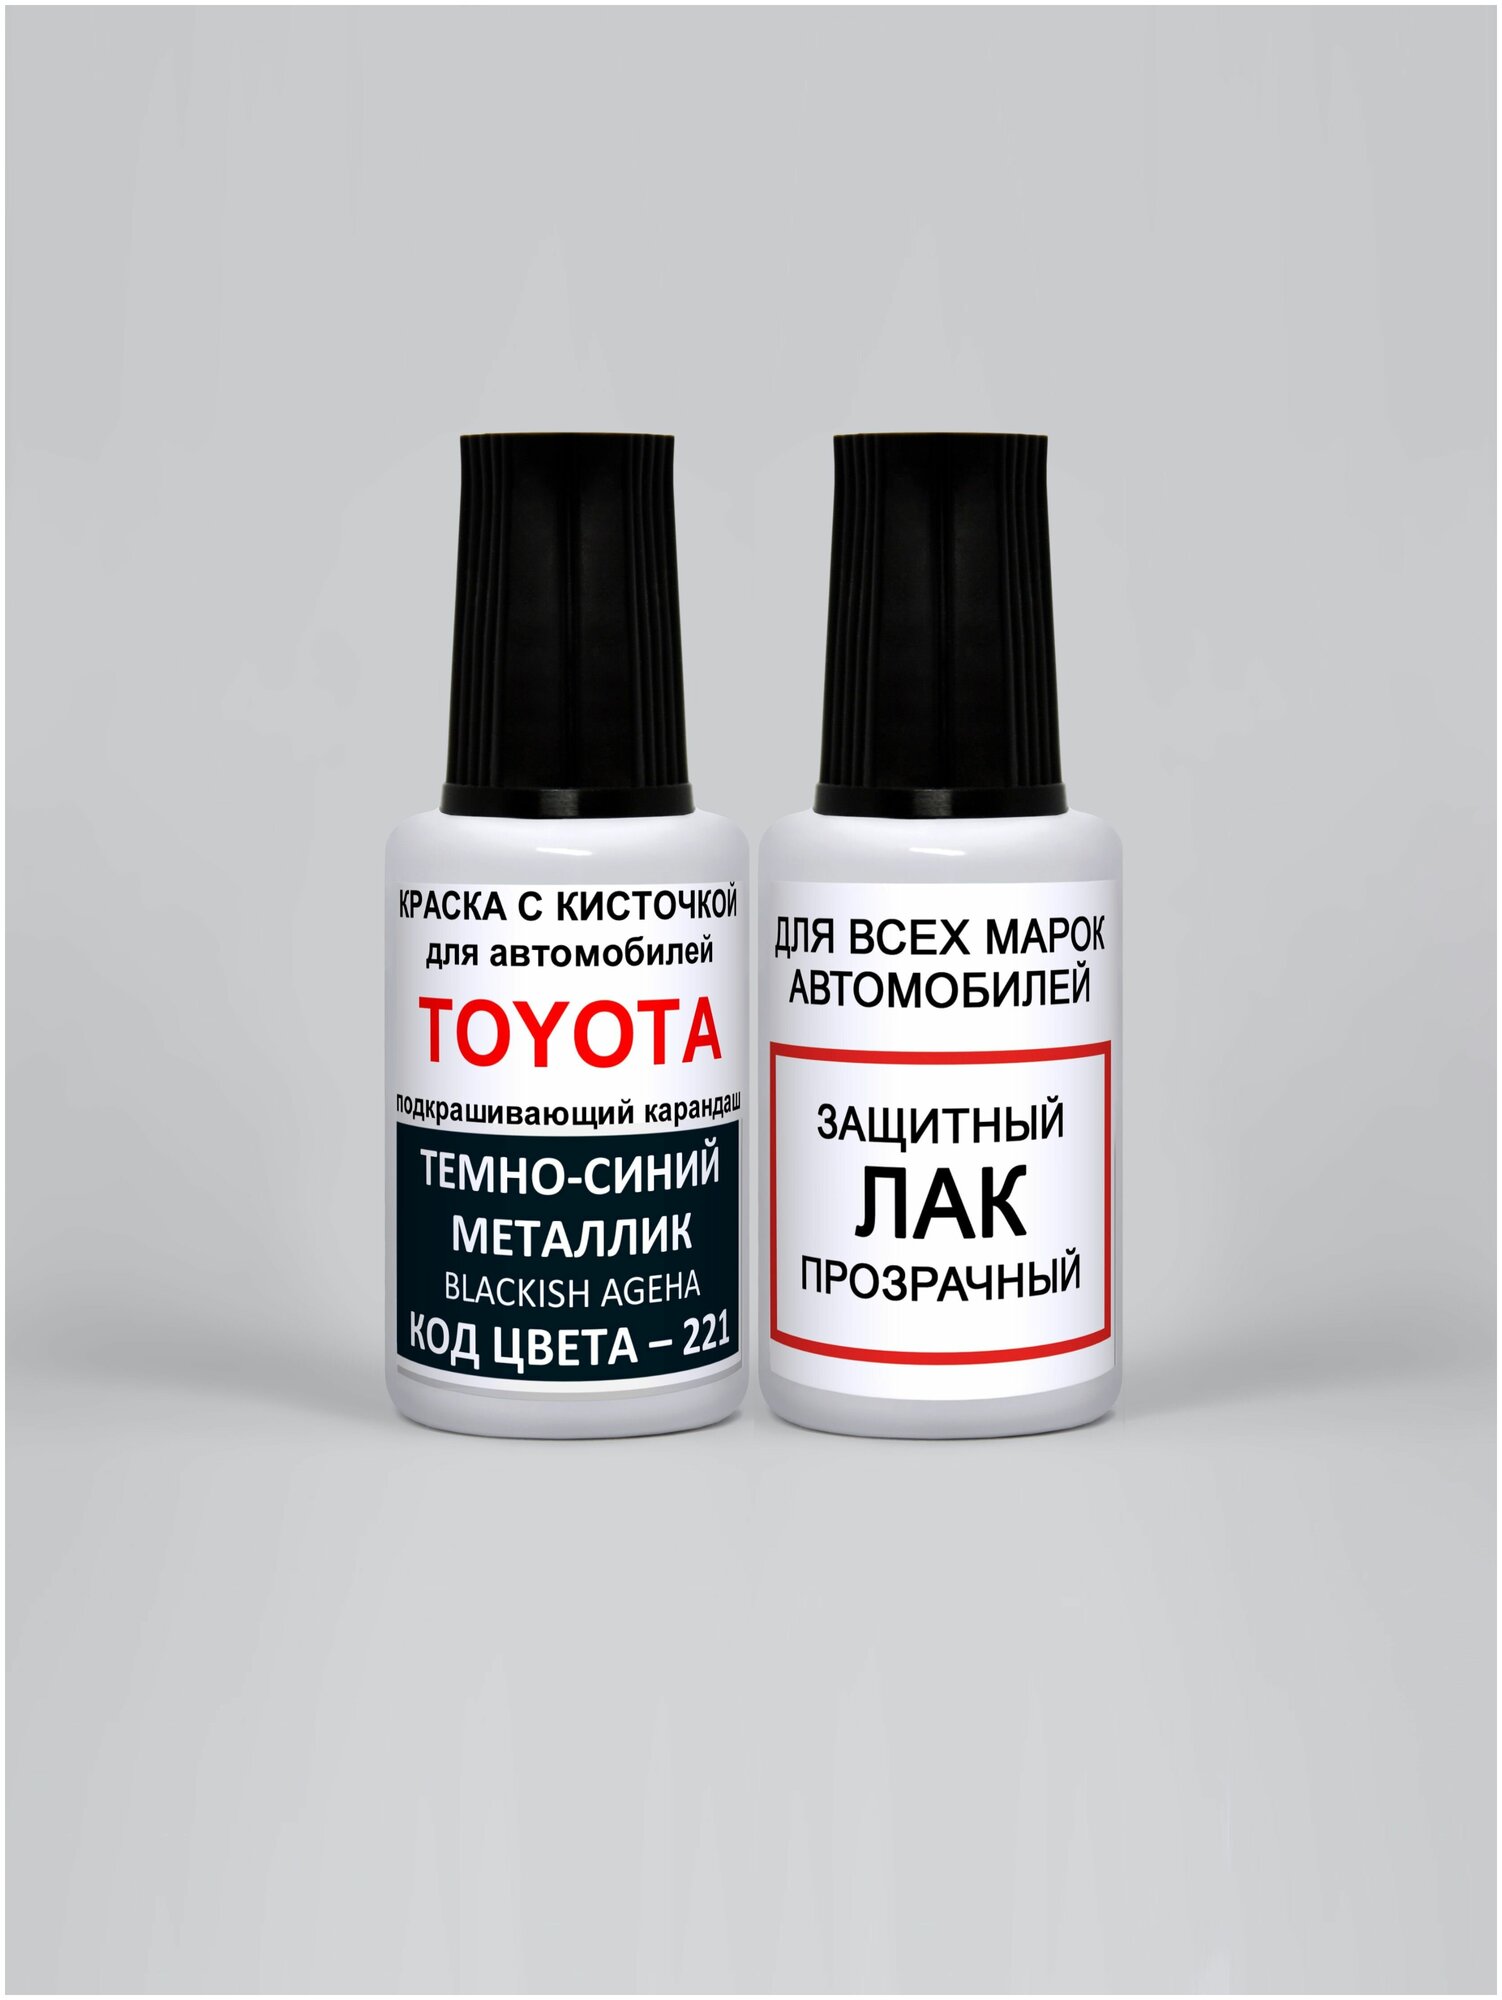 Набор для подкраски 221 для Toyota Темно-синий металлик, Blackish Ageha, краска+лак 2 предмета